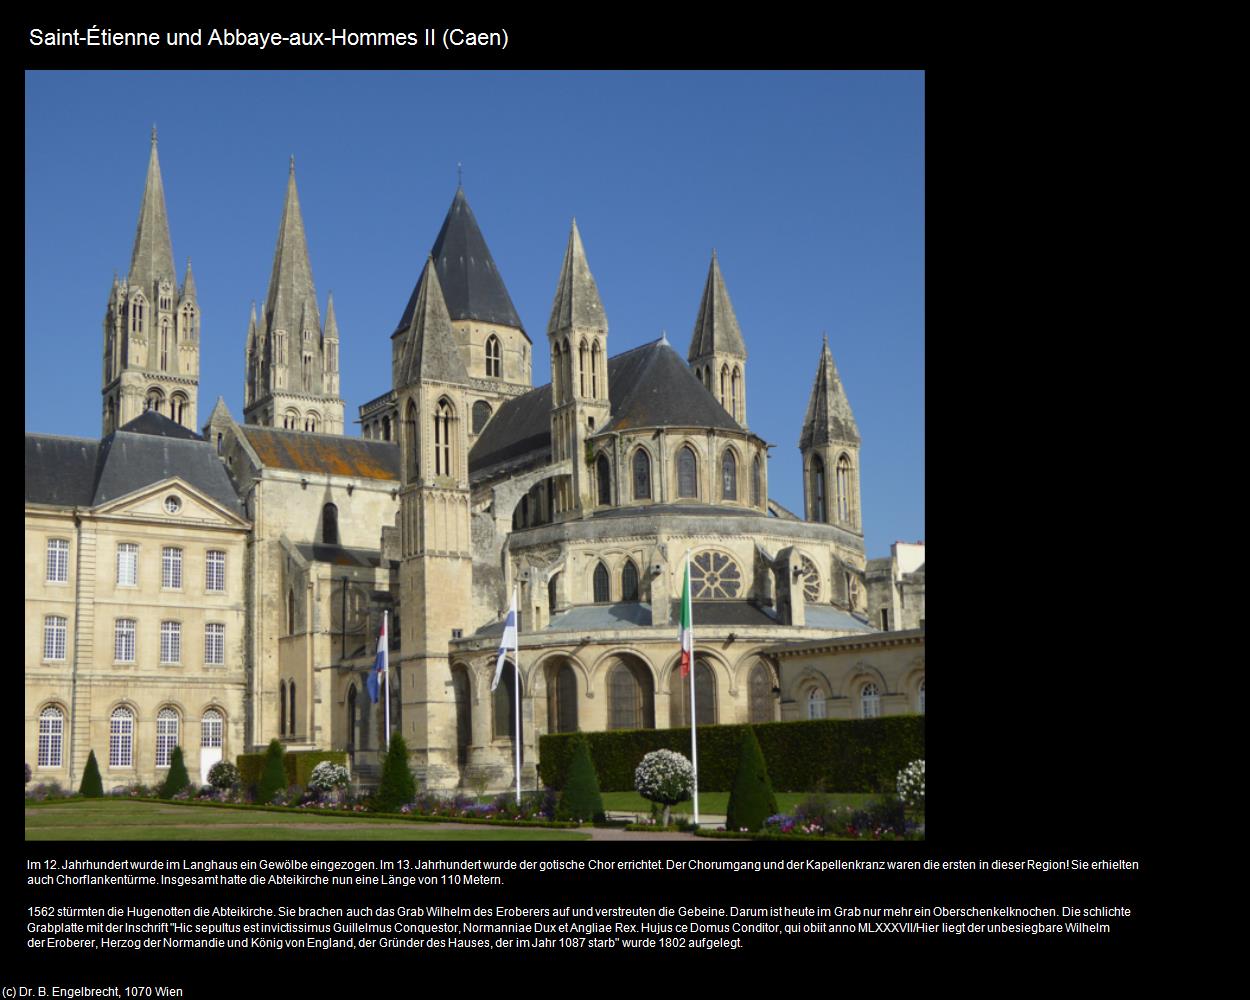 Saint-Etienne und Abbaye-aux-Hommes II (Caen (FR-NOR)) in Kulturatlas-FRANKREICH